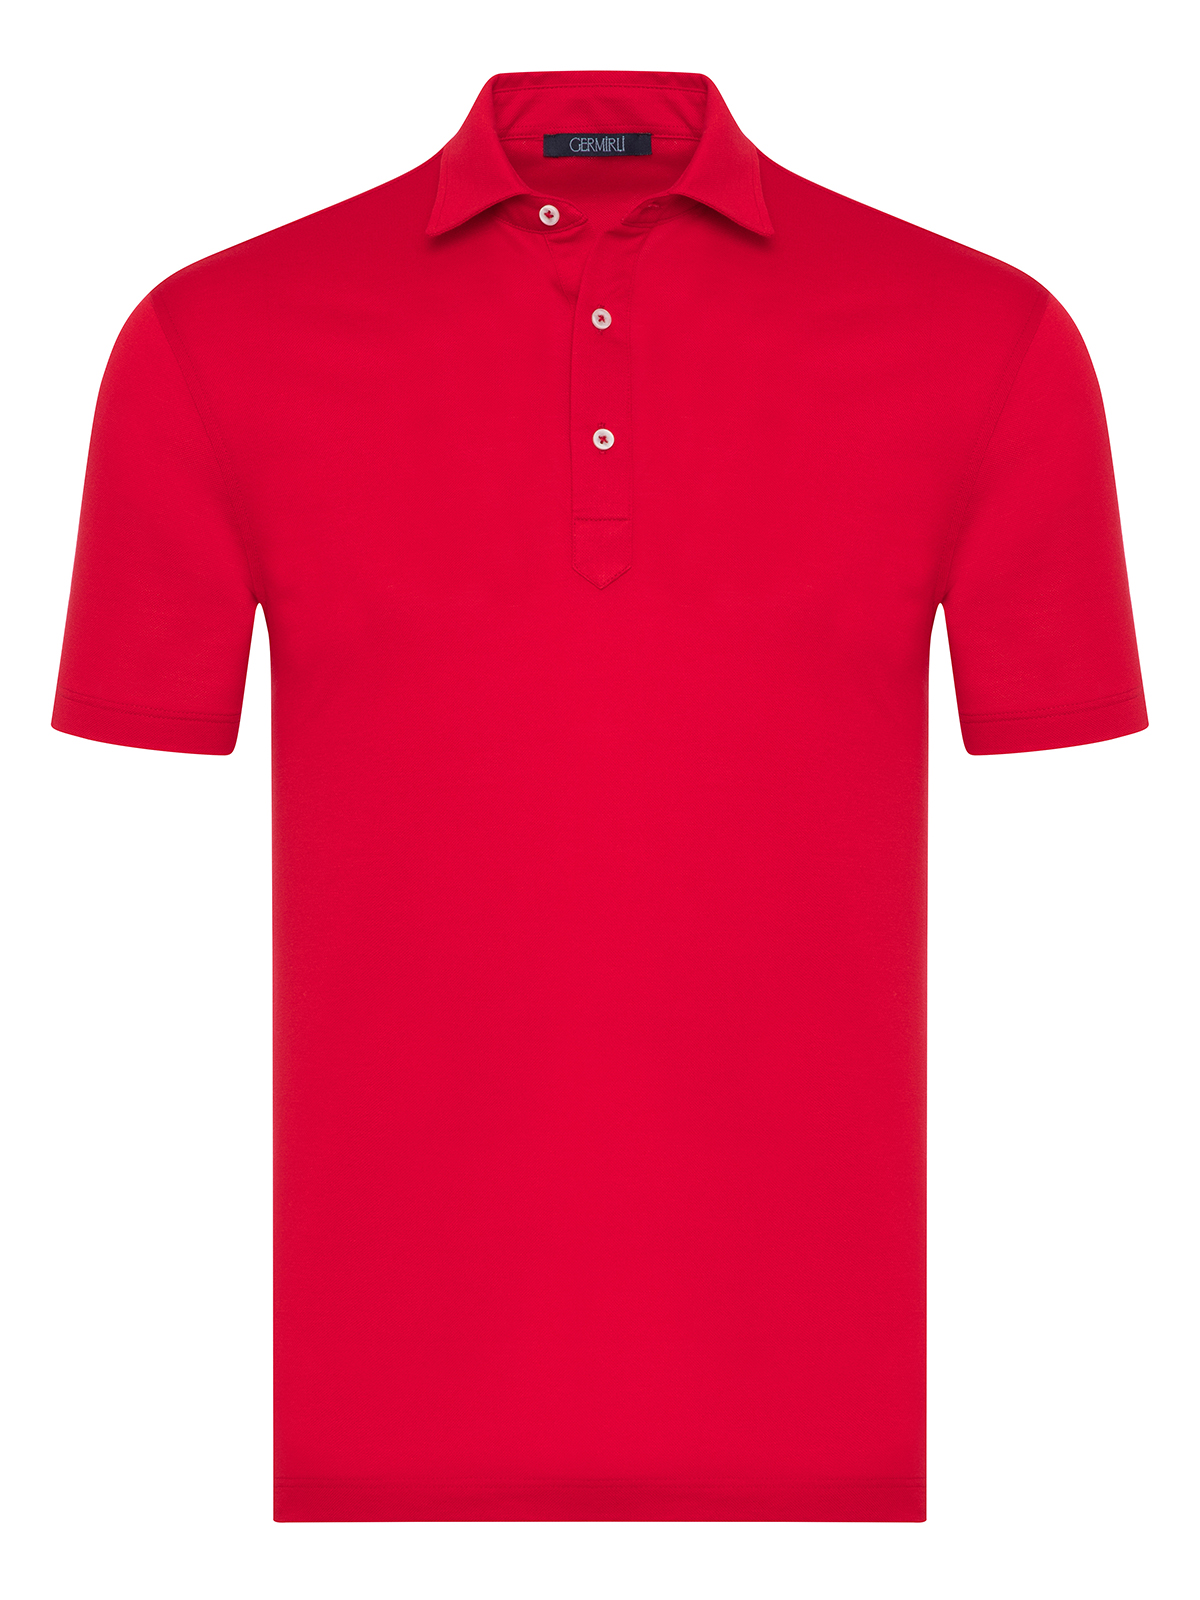 Germirli - Germirli Kırmızı Piquet Gömlek Yaka Regular Fit Merserize Tişört